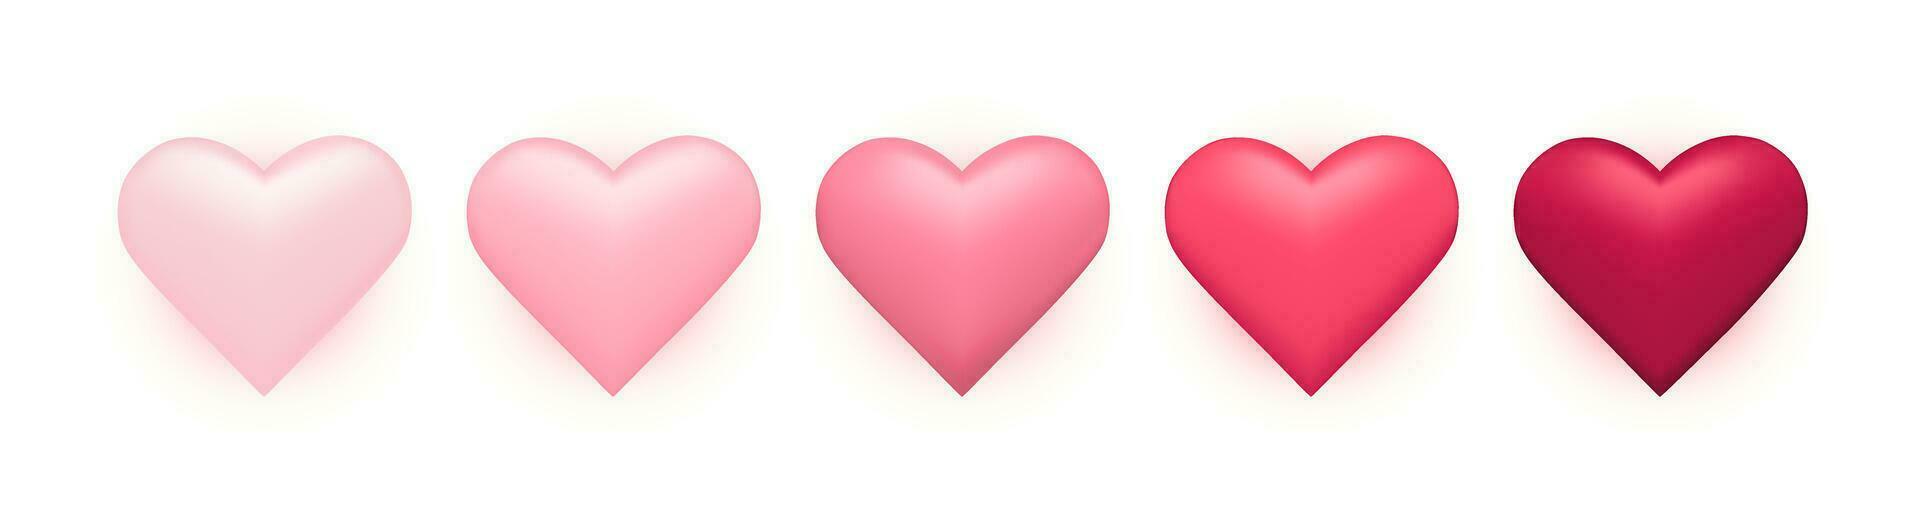 3d realistisk hjärtan samling i rosa, magenta färger vektor